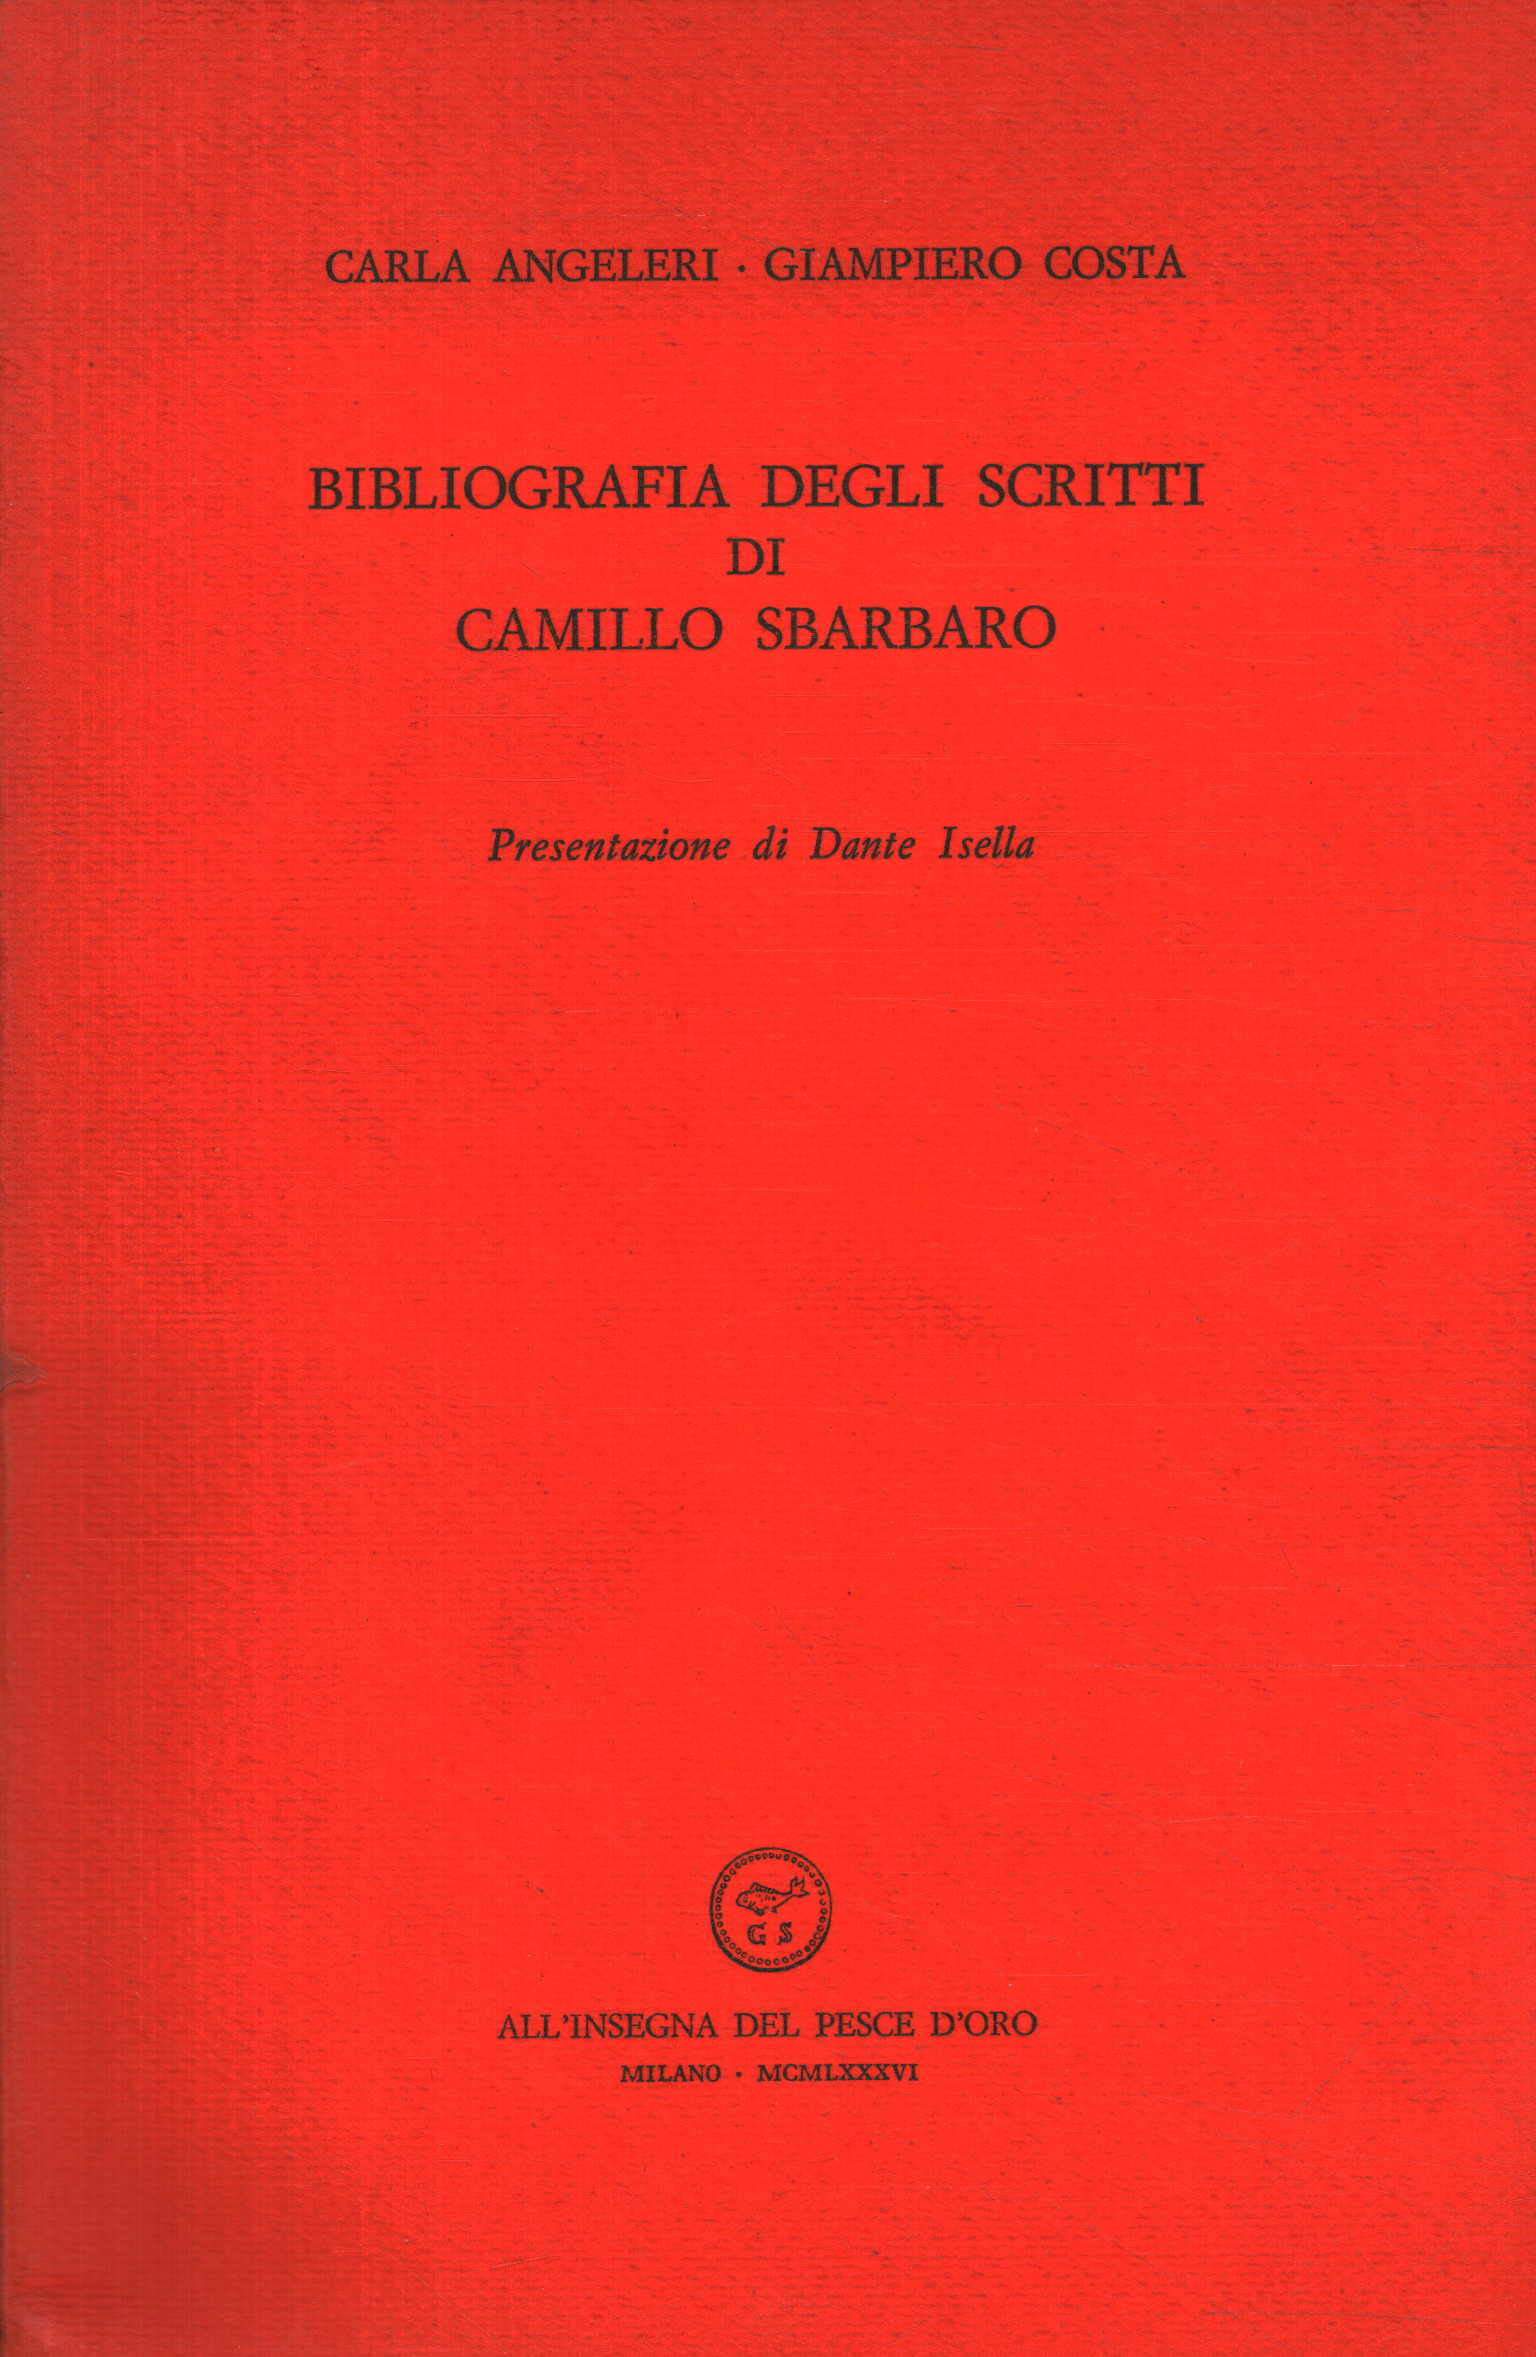 Bibliographie der Schriften von Camillus Sb